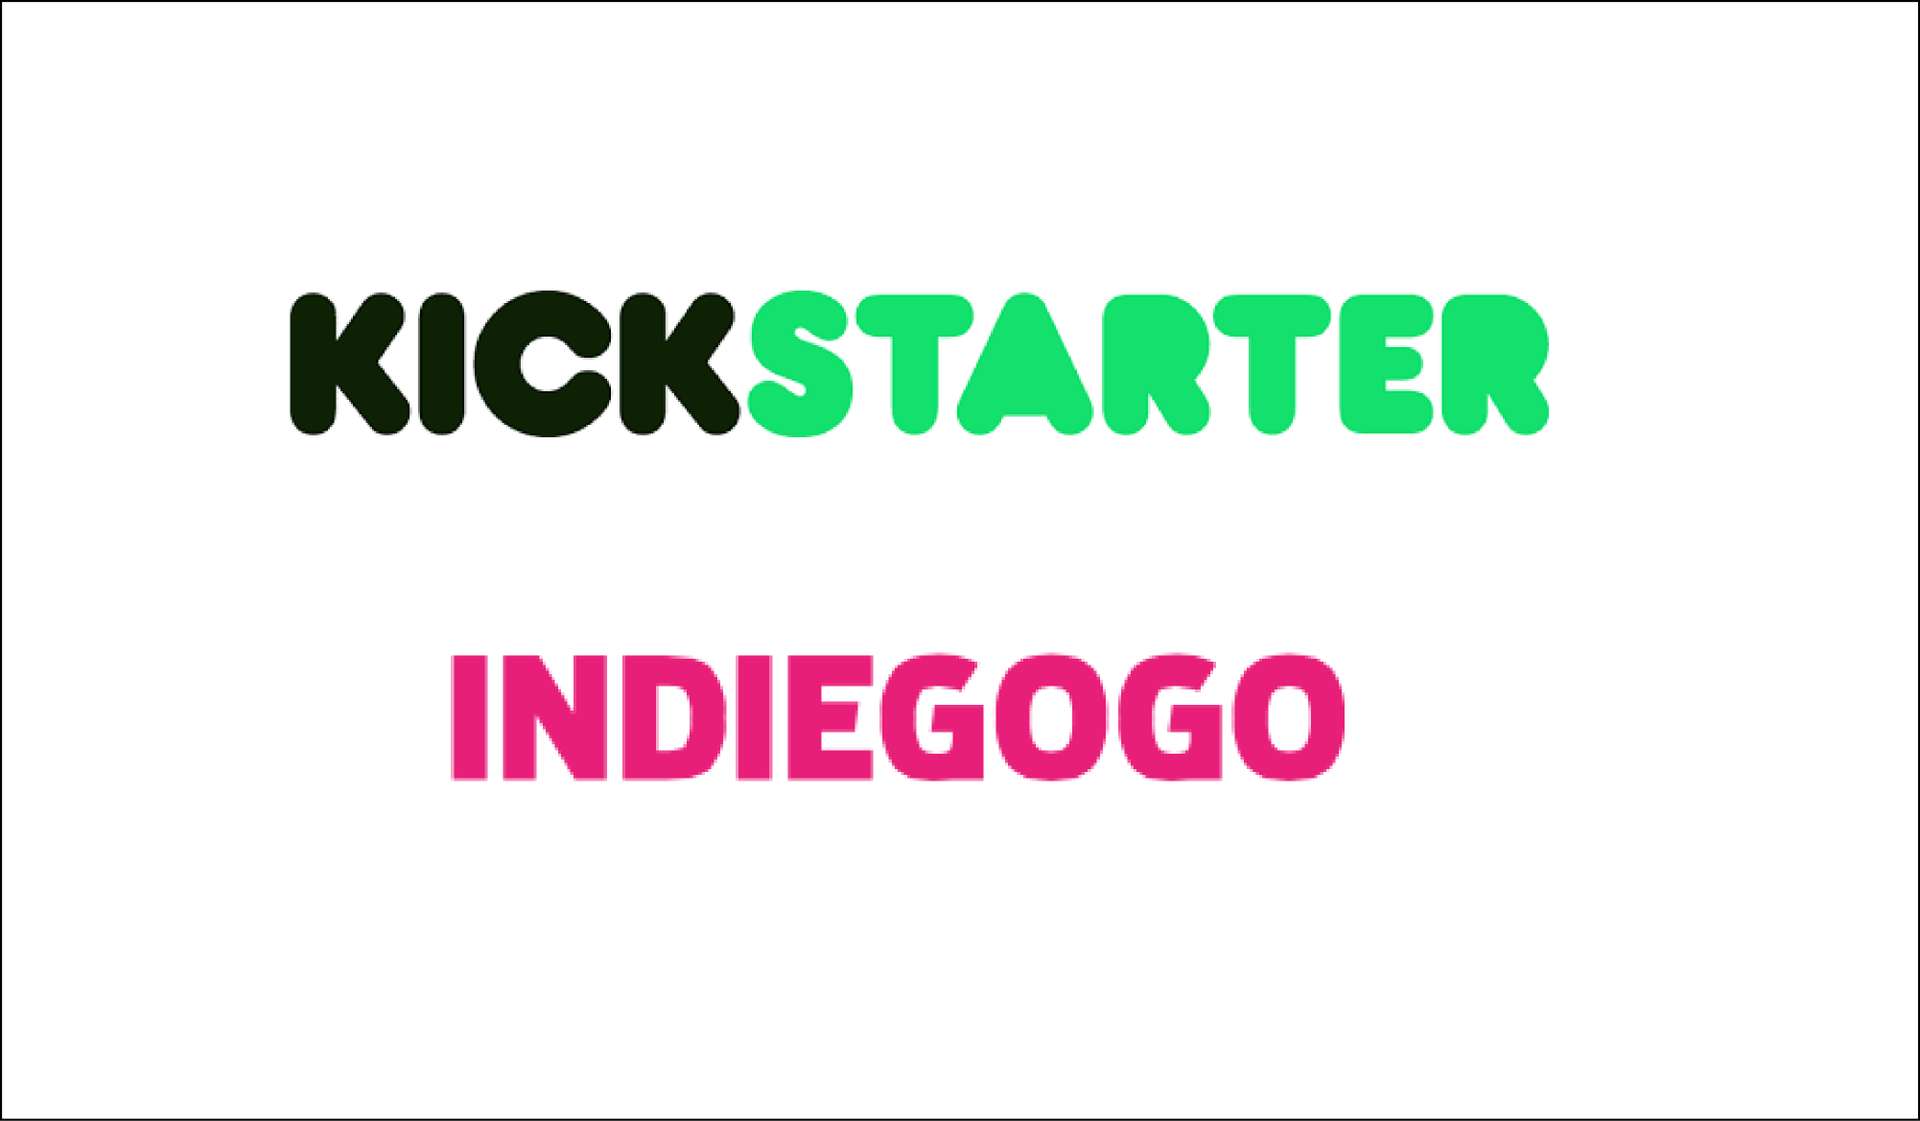 /img/kickstarter/kickstarter-indiegogo-logos.jpg